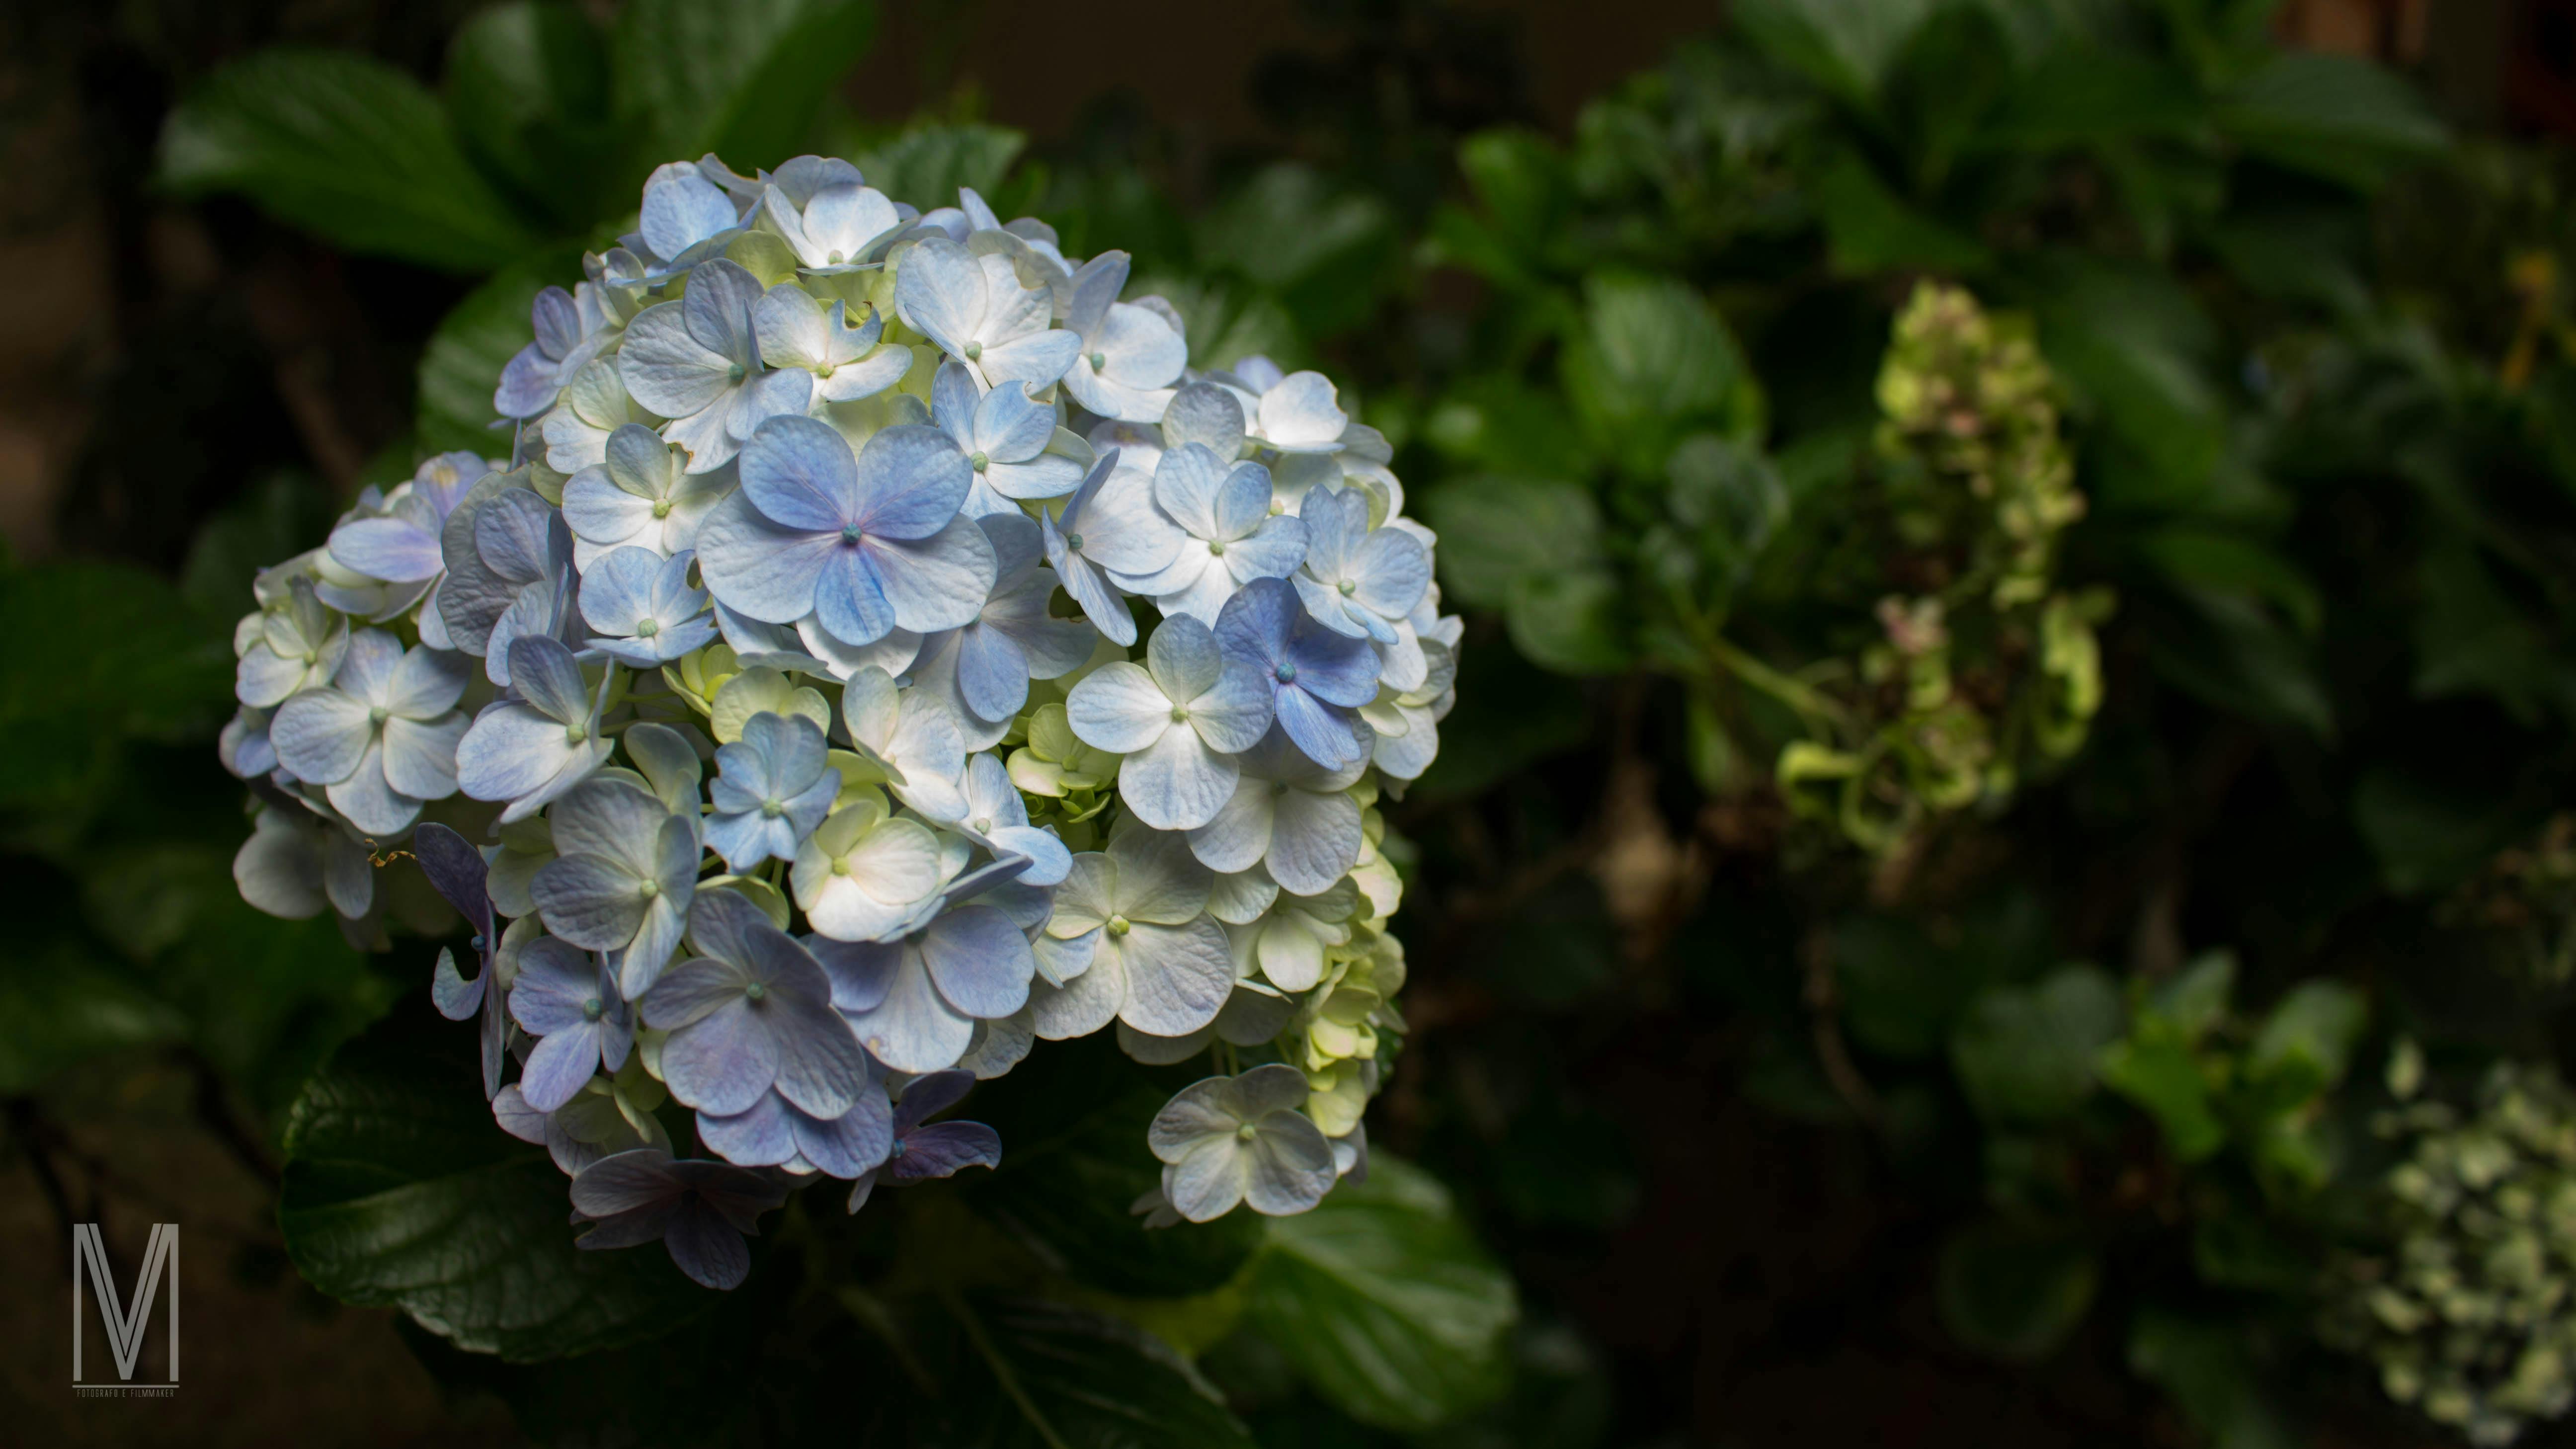 Imagine De Stoc Gratuită Cu Buchet De Flori Flori Albastre